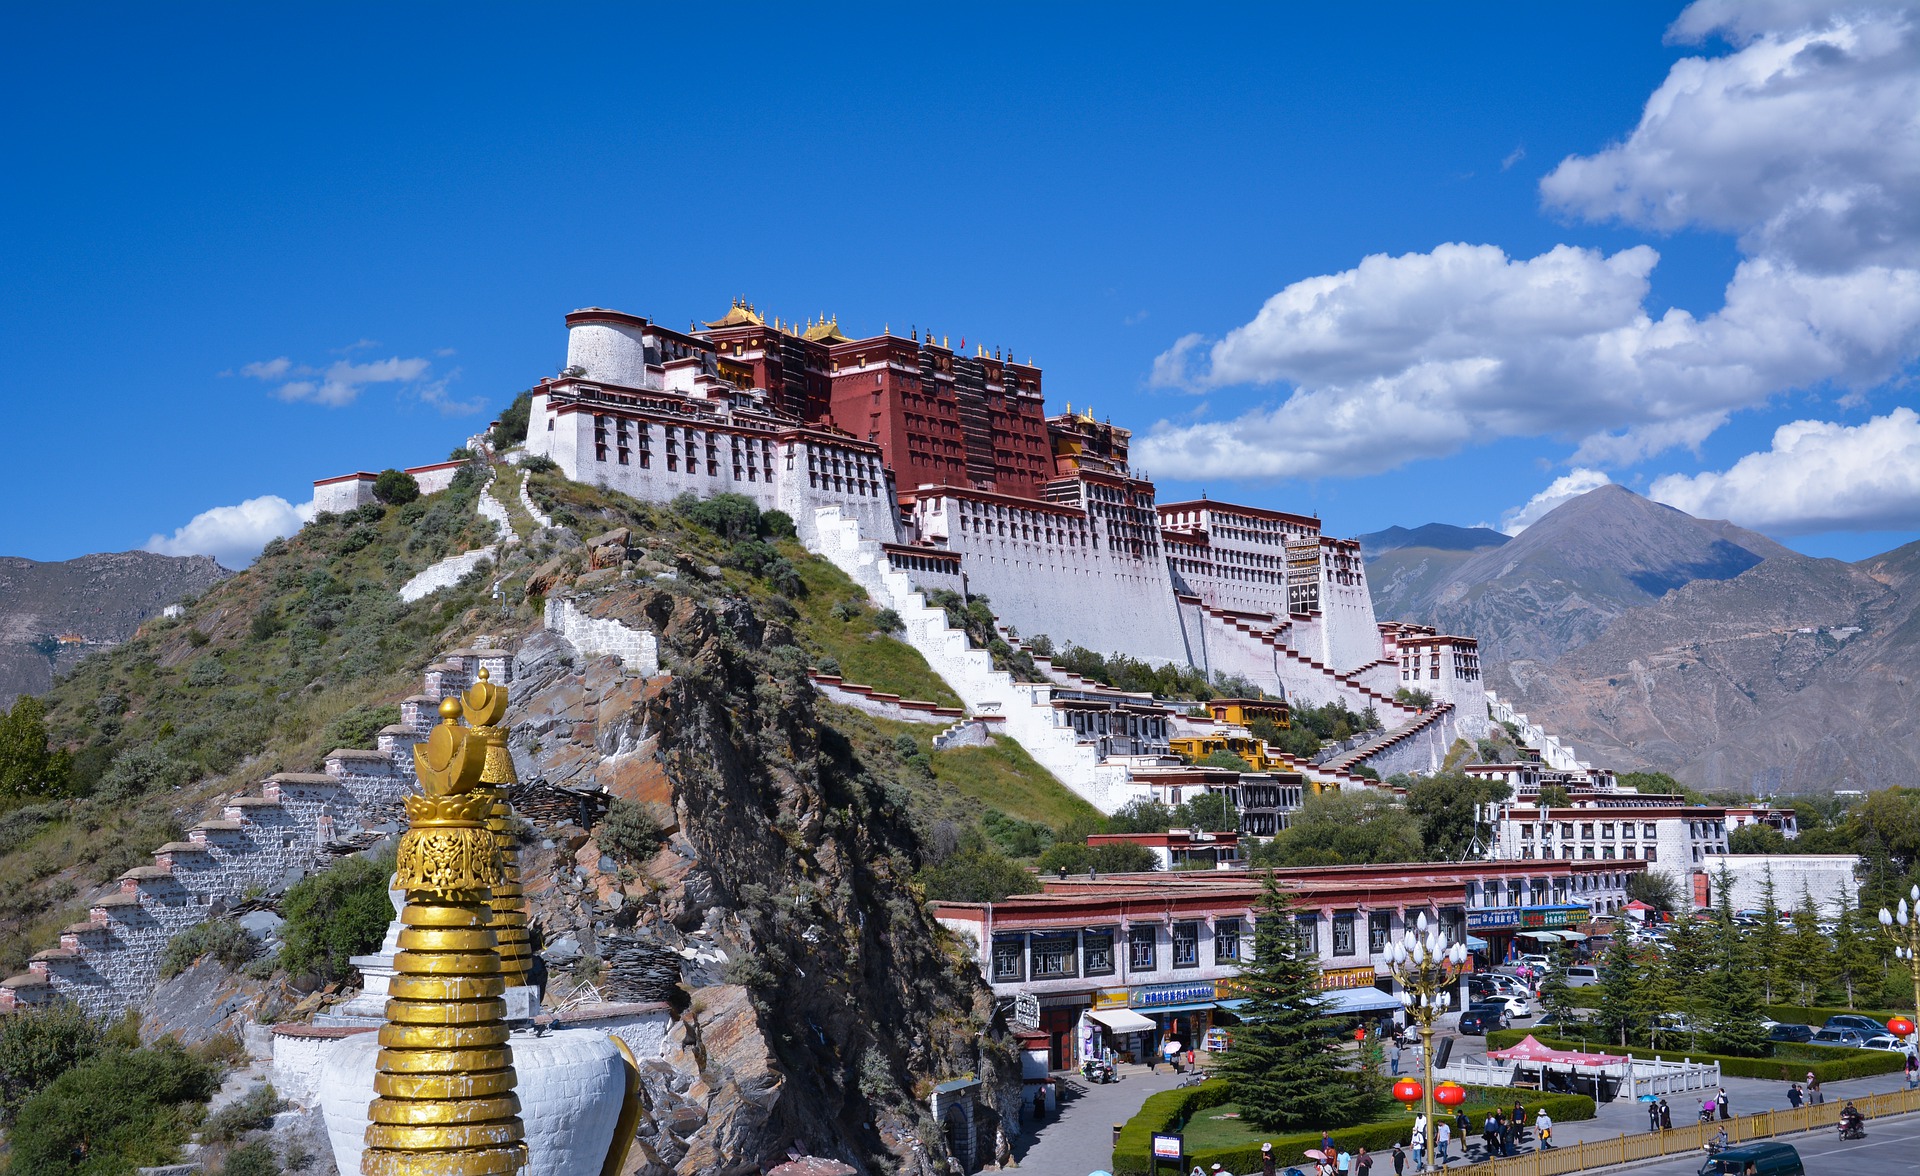 Cung điện Potala: Biểu tượng của Phật giáo Tây Tạng